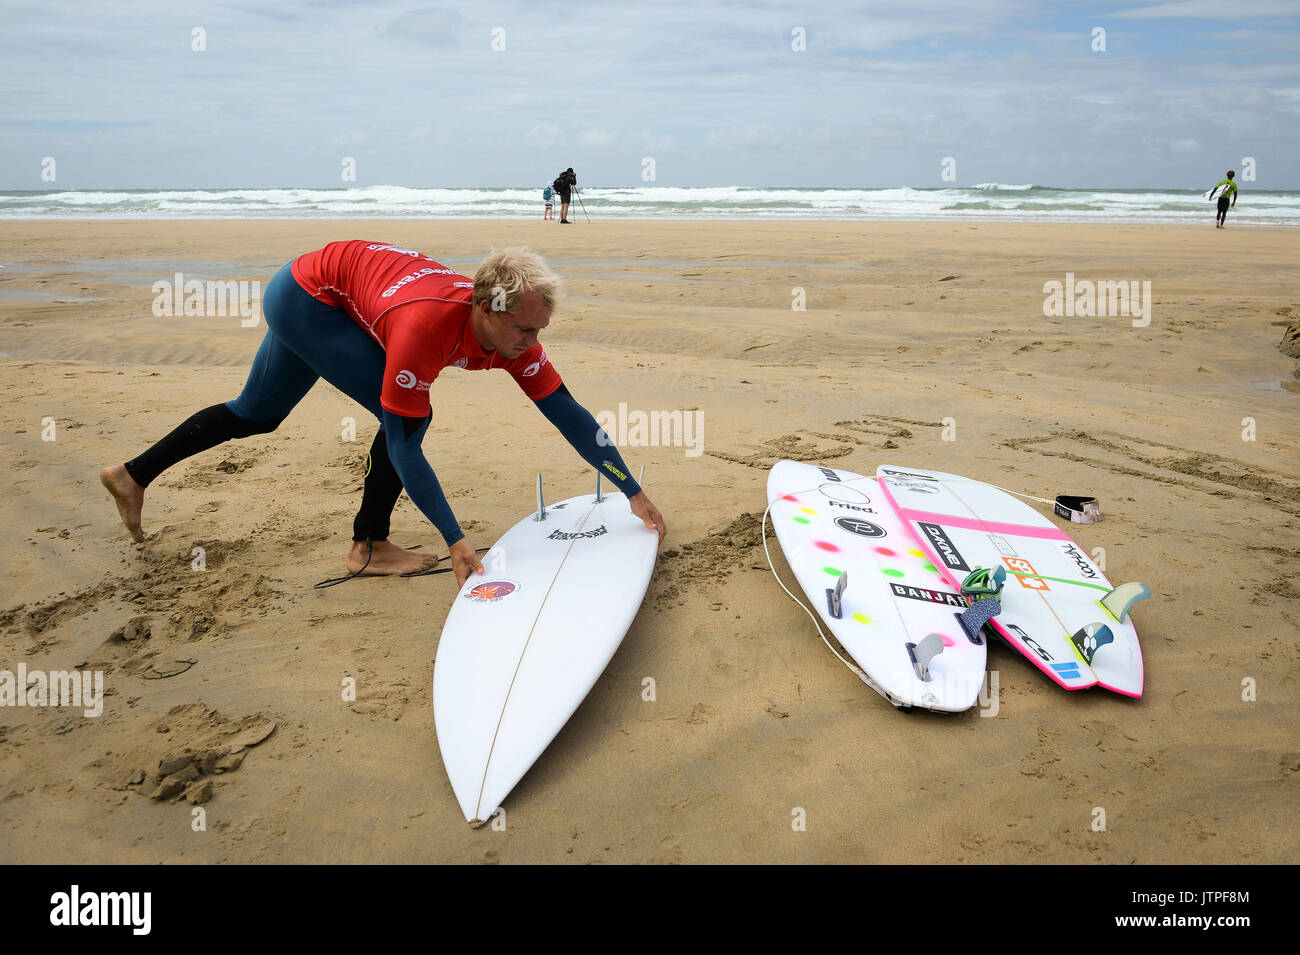 Un internaute se prépare à prendre part à la chauffe pour la Ligue mondiale de Surf Quicksilver Boardmasters compétition ouverte à la plage de Fistral, Newquay, Cornwall. Banque D'Images